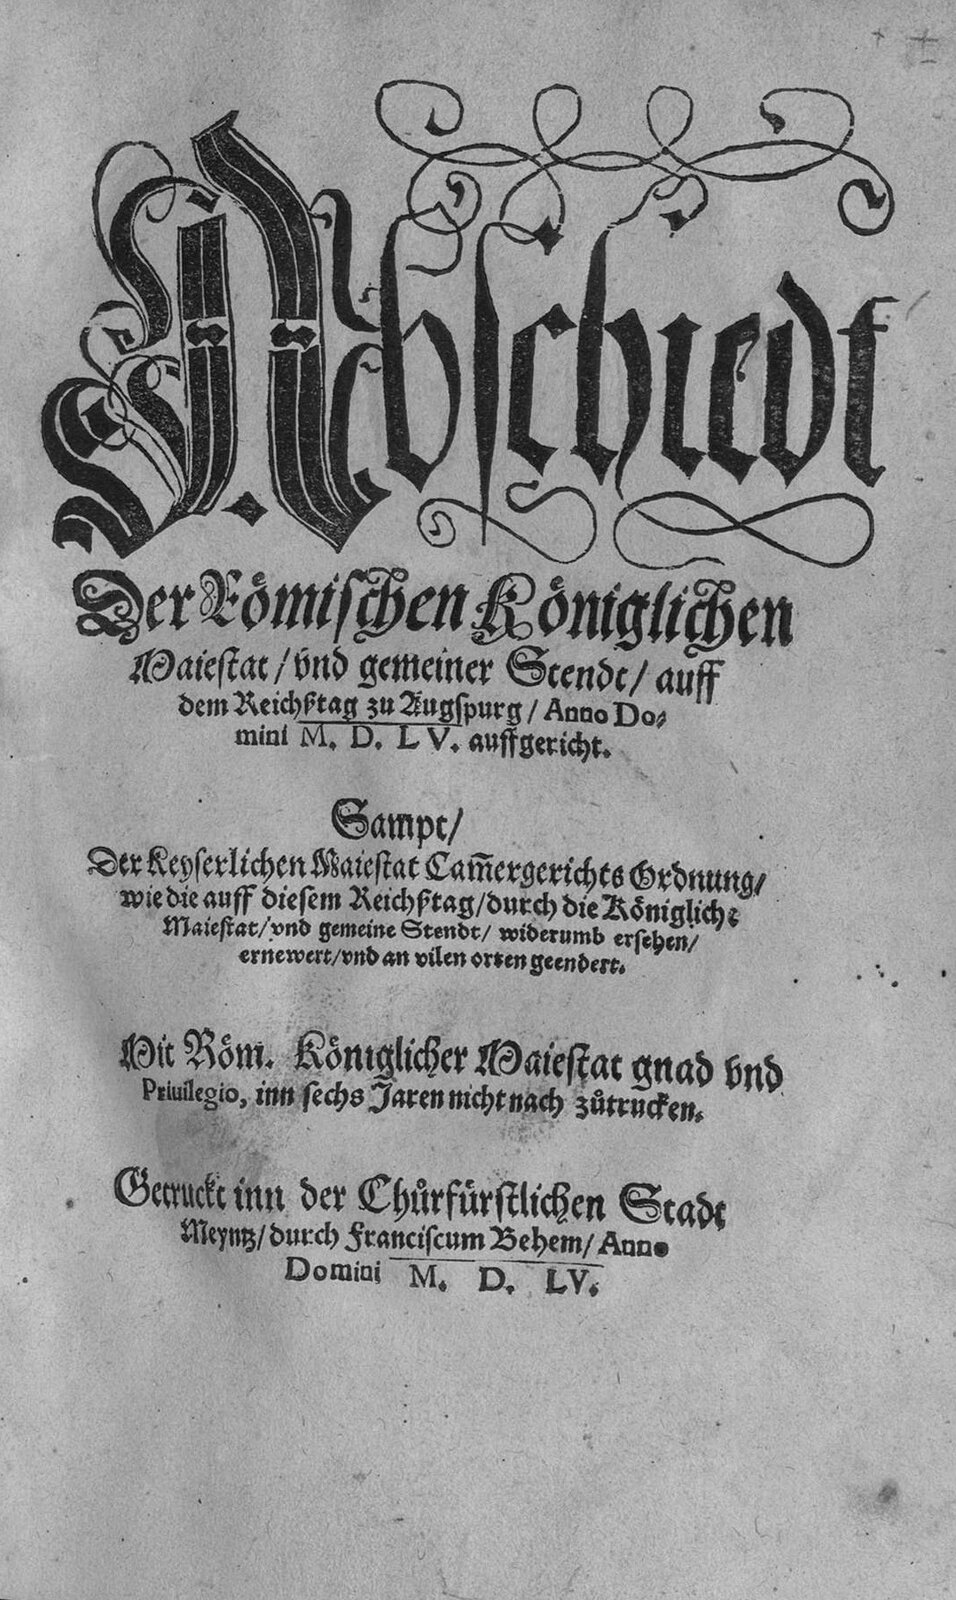 Pierwsza strona druku ulotnego z treścią "pokoju augsburskiego" z 1555 r. Pierwsza strona druku ulotnego z treścią "pokoju augsburskiego" z 1555 r. Źródło: domena publiczna.